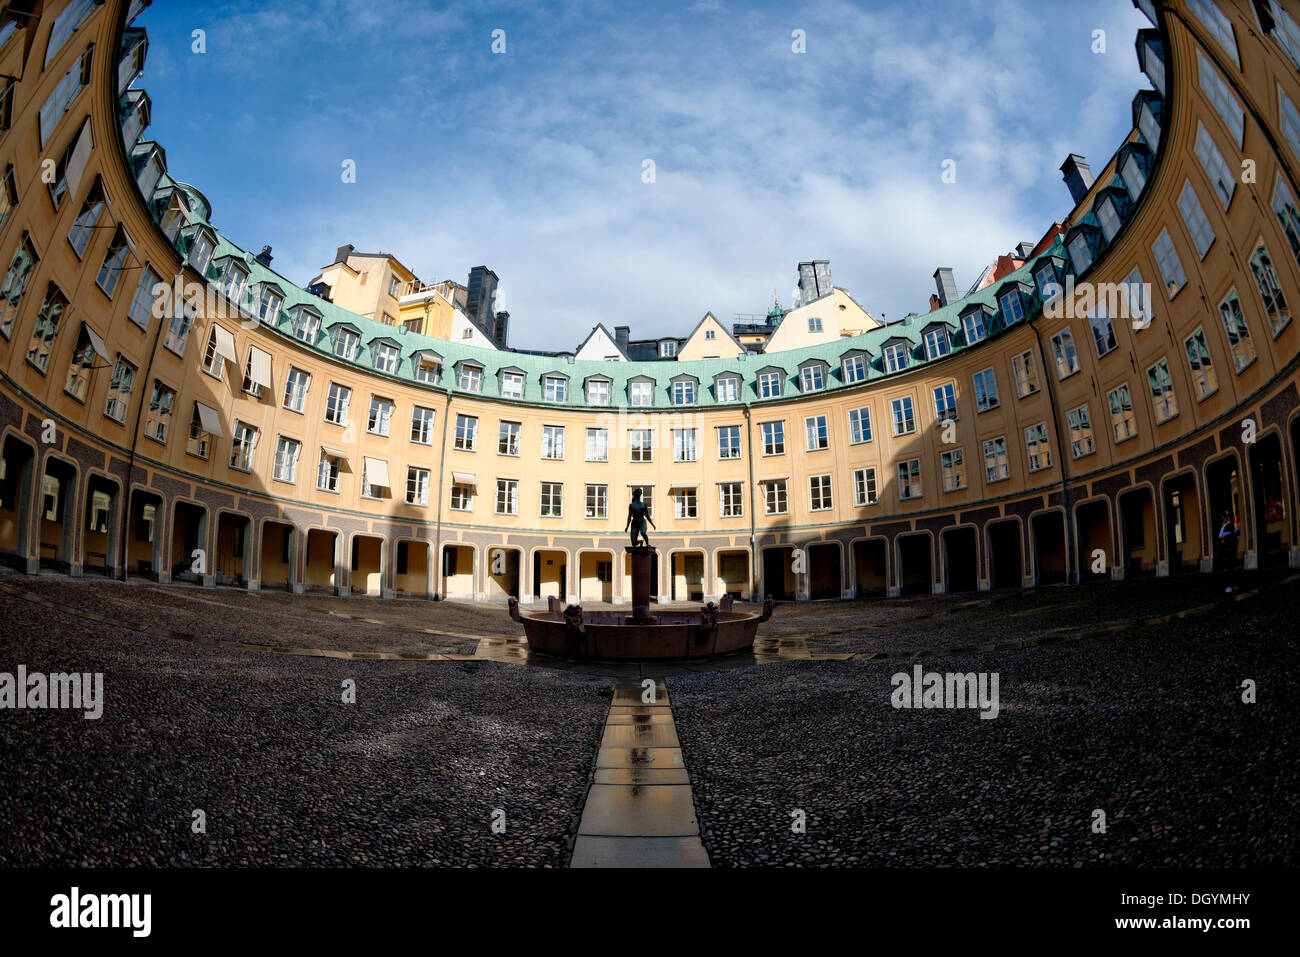 Brantingtorget, cour, vue fisheye, Gamla Stan, Stockholm, Stockholm, Suède Comté Banque D'Images